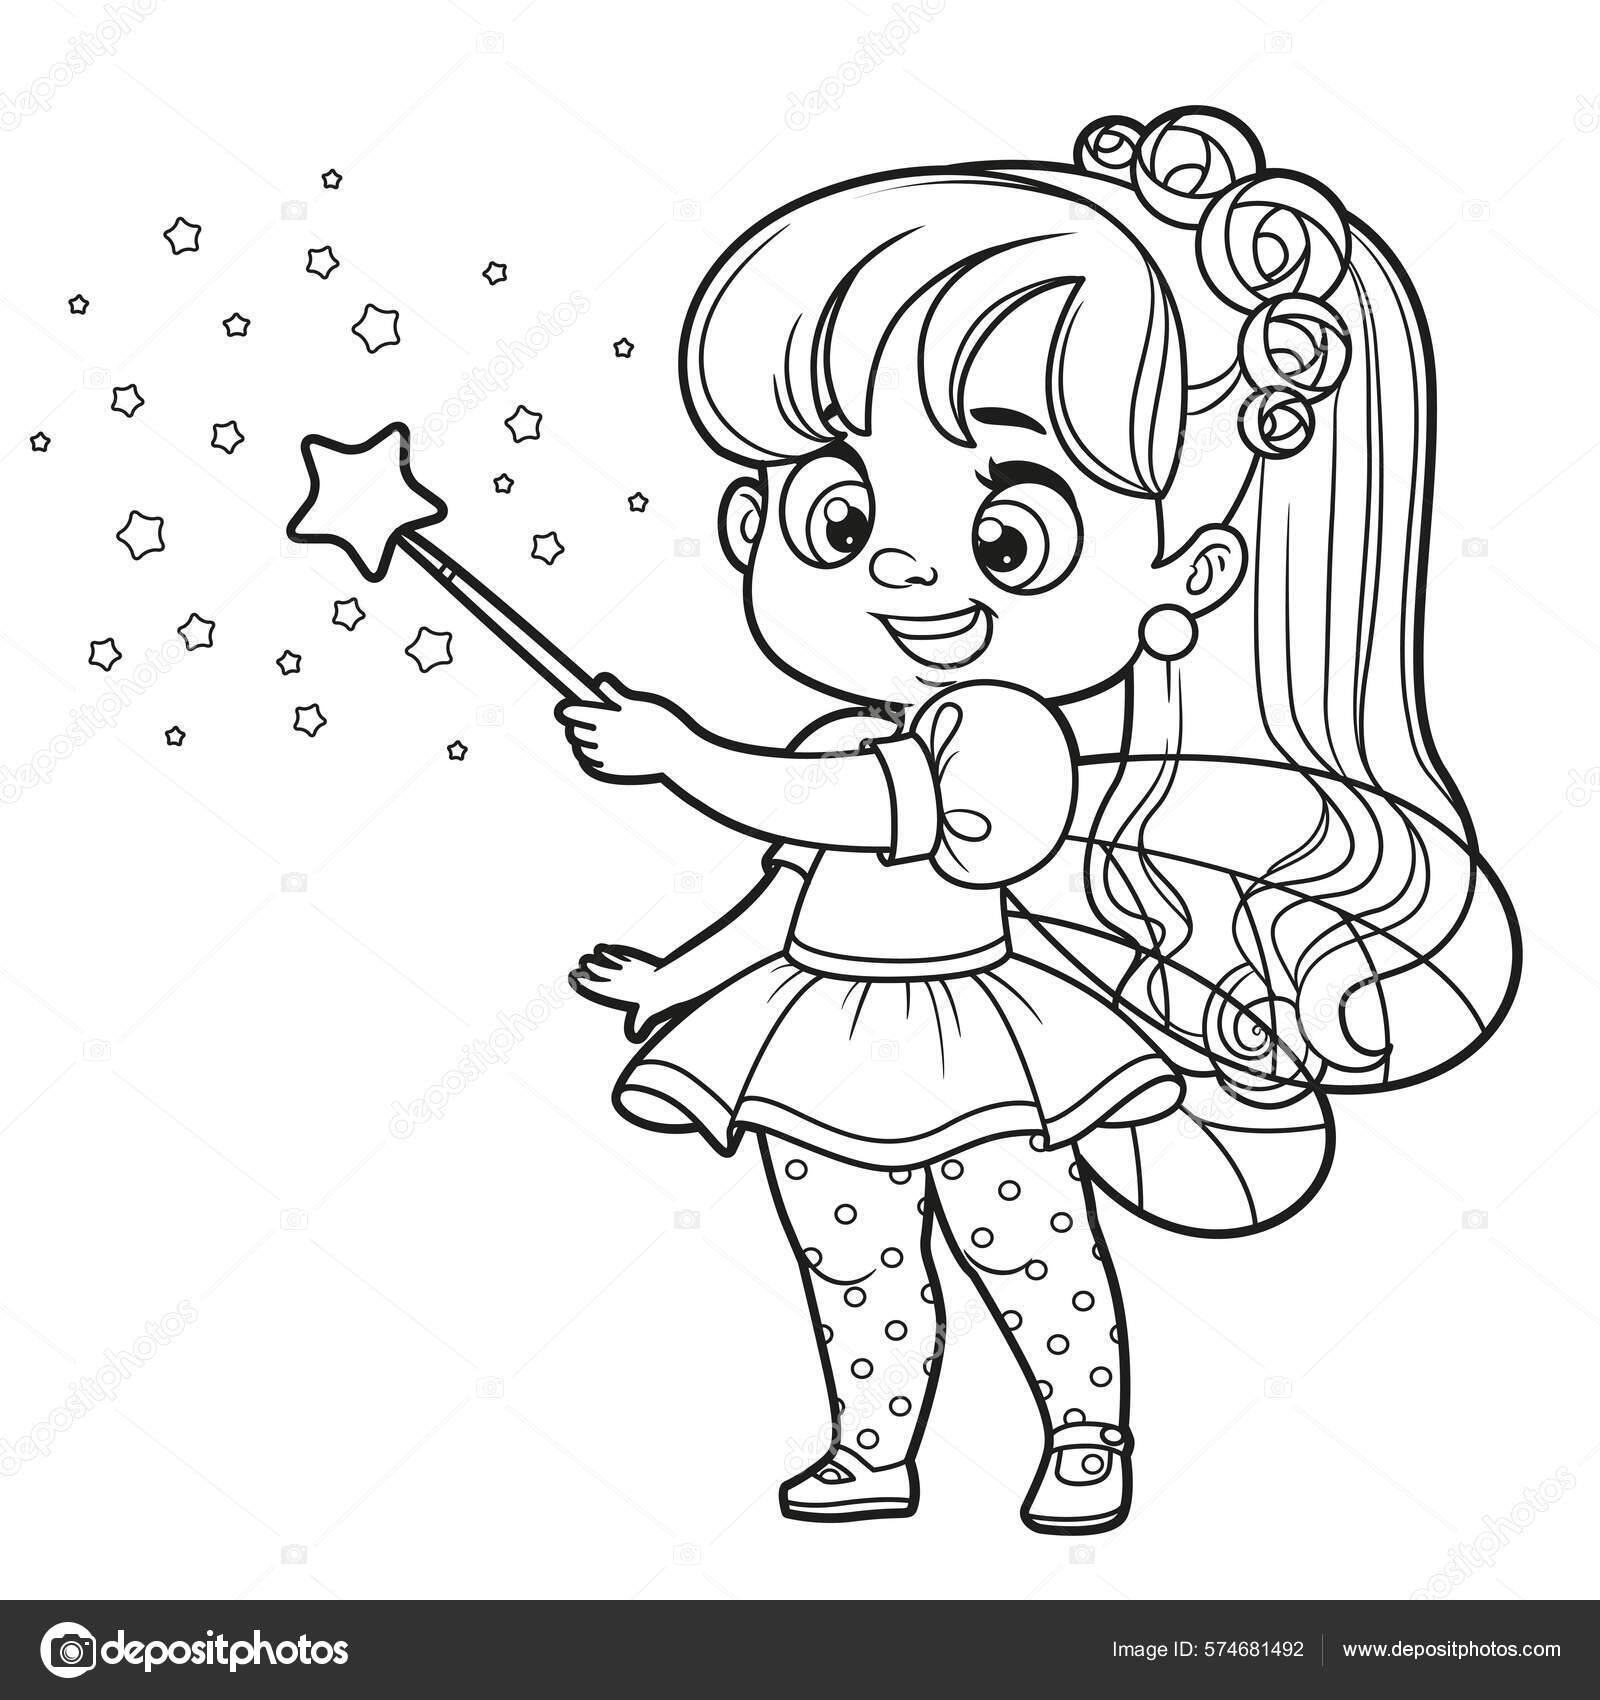 Desenho de princesa com varinha mágica para pintar